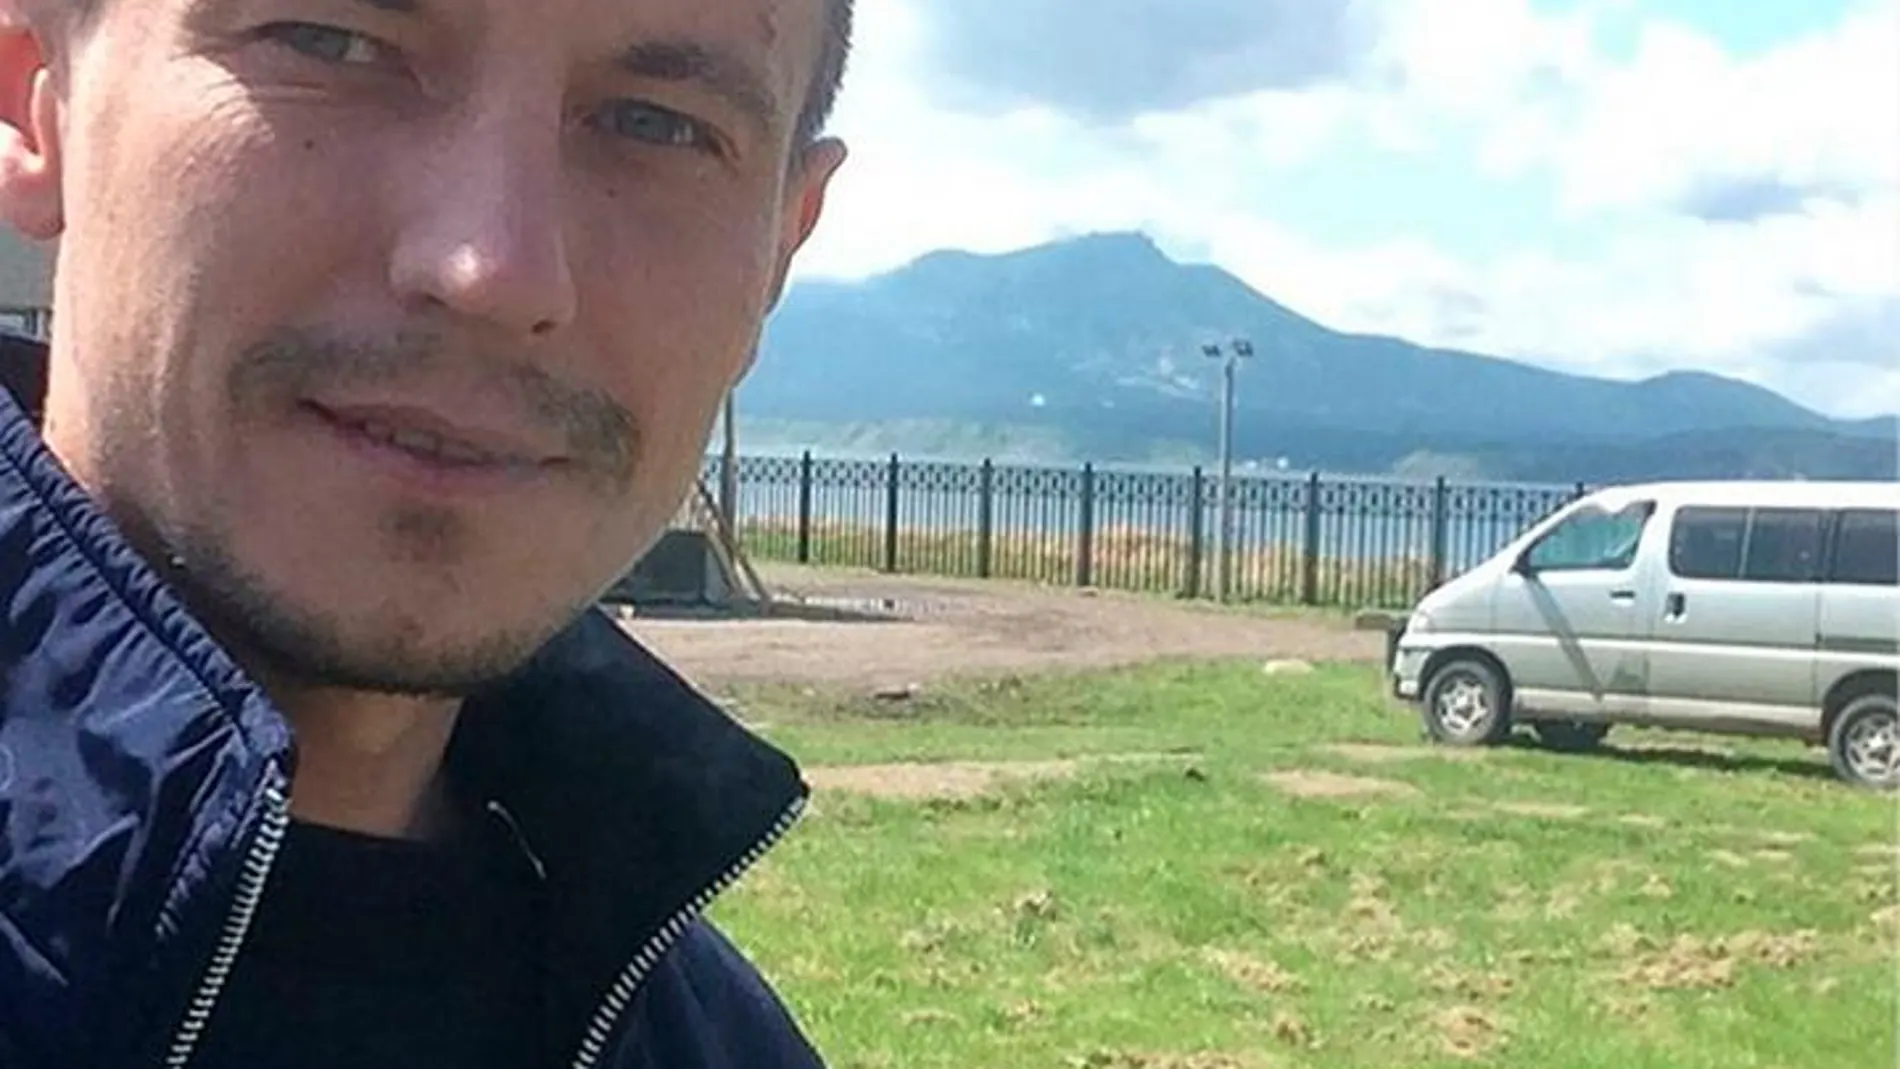 Alexey Ivanovsky, de 36 años, se debate entre la vida y la muerte tras el ataque